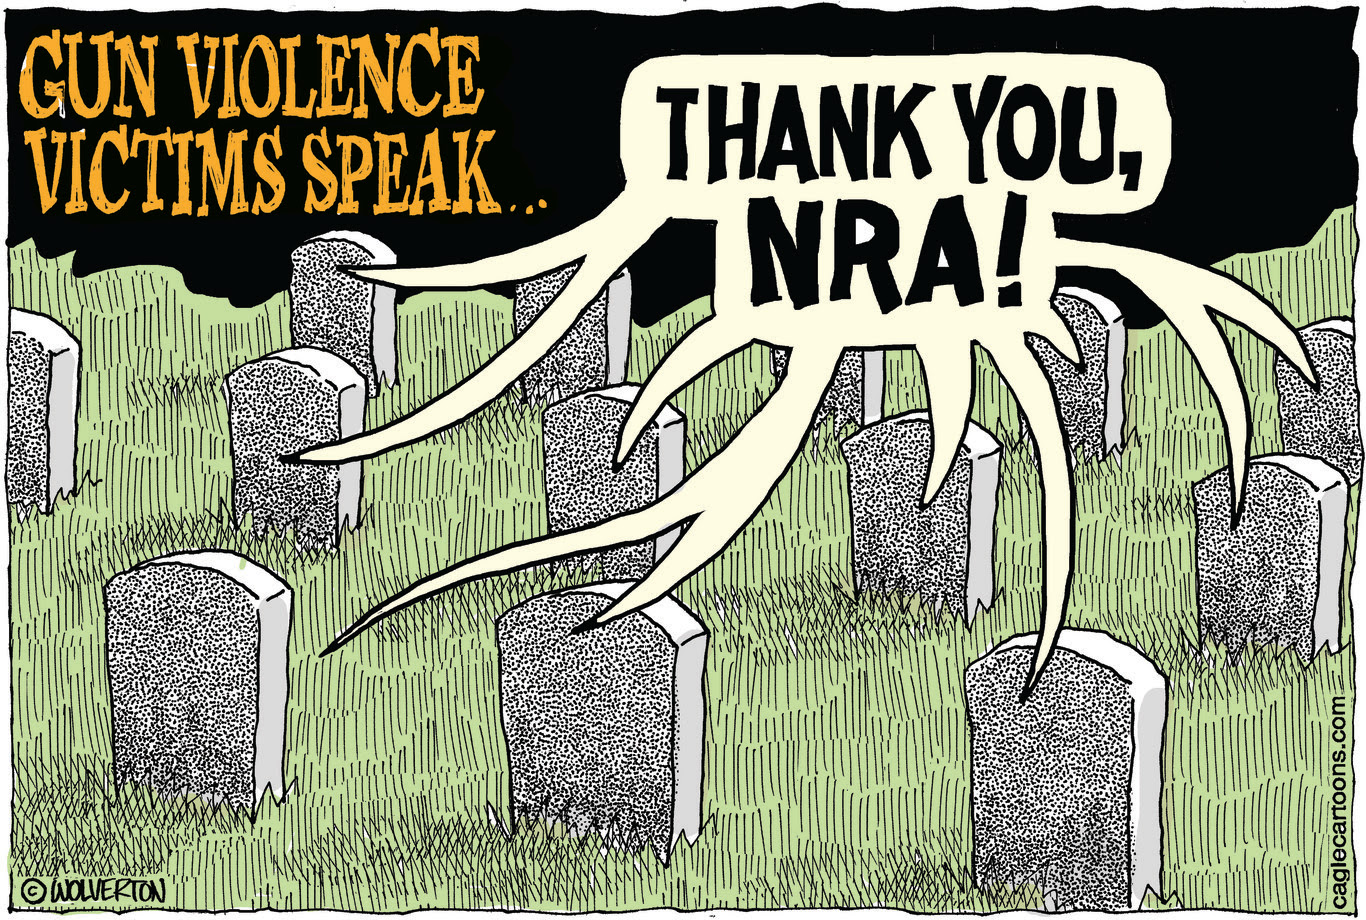 NRA gun violence victims